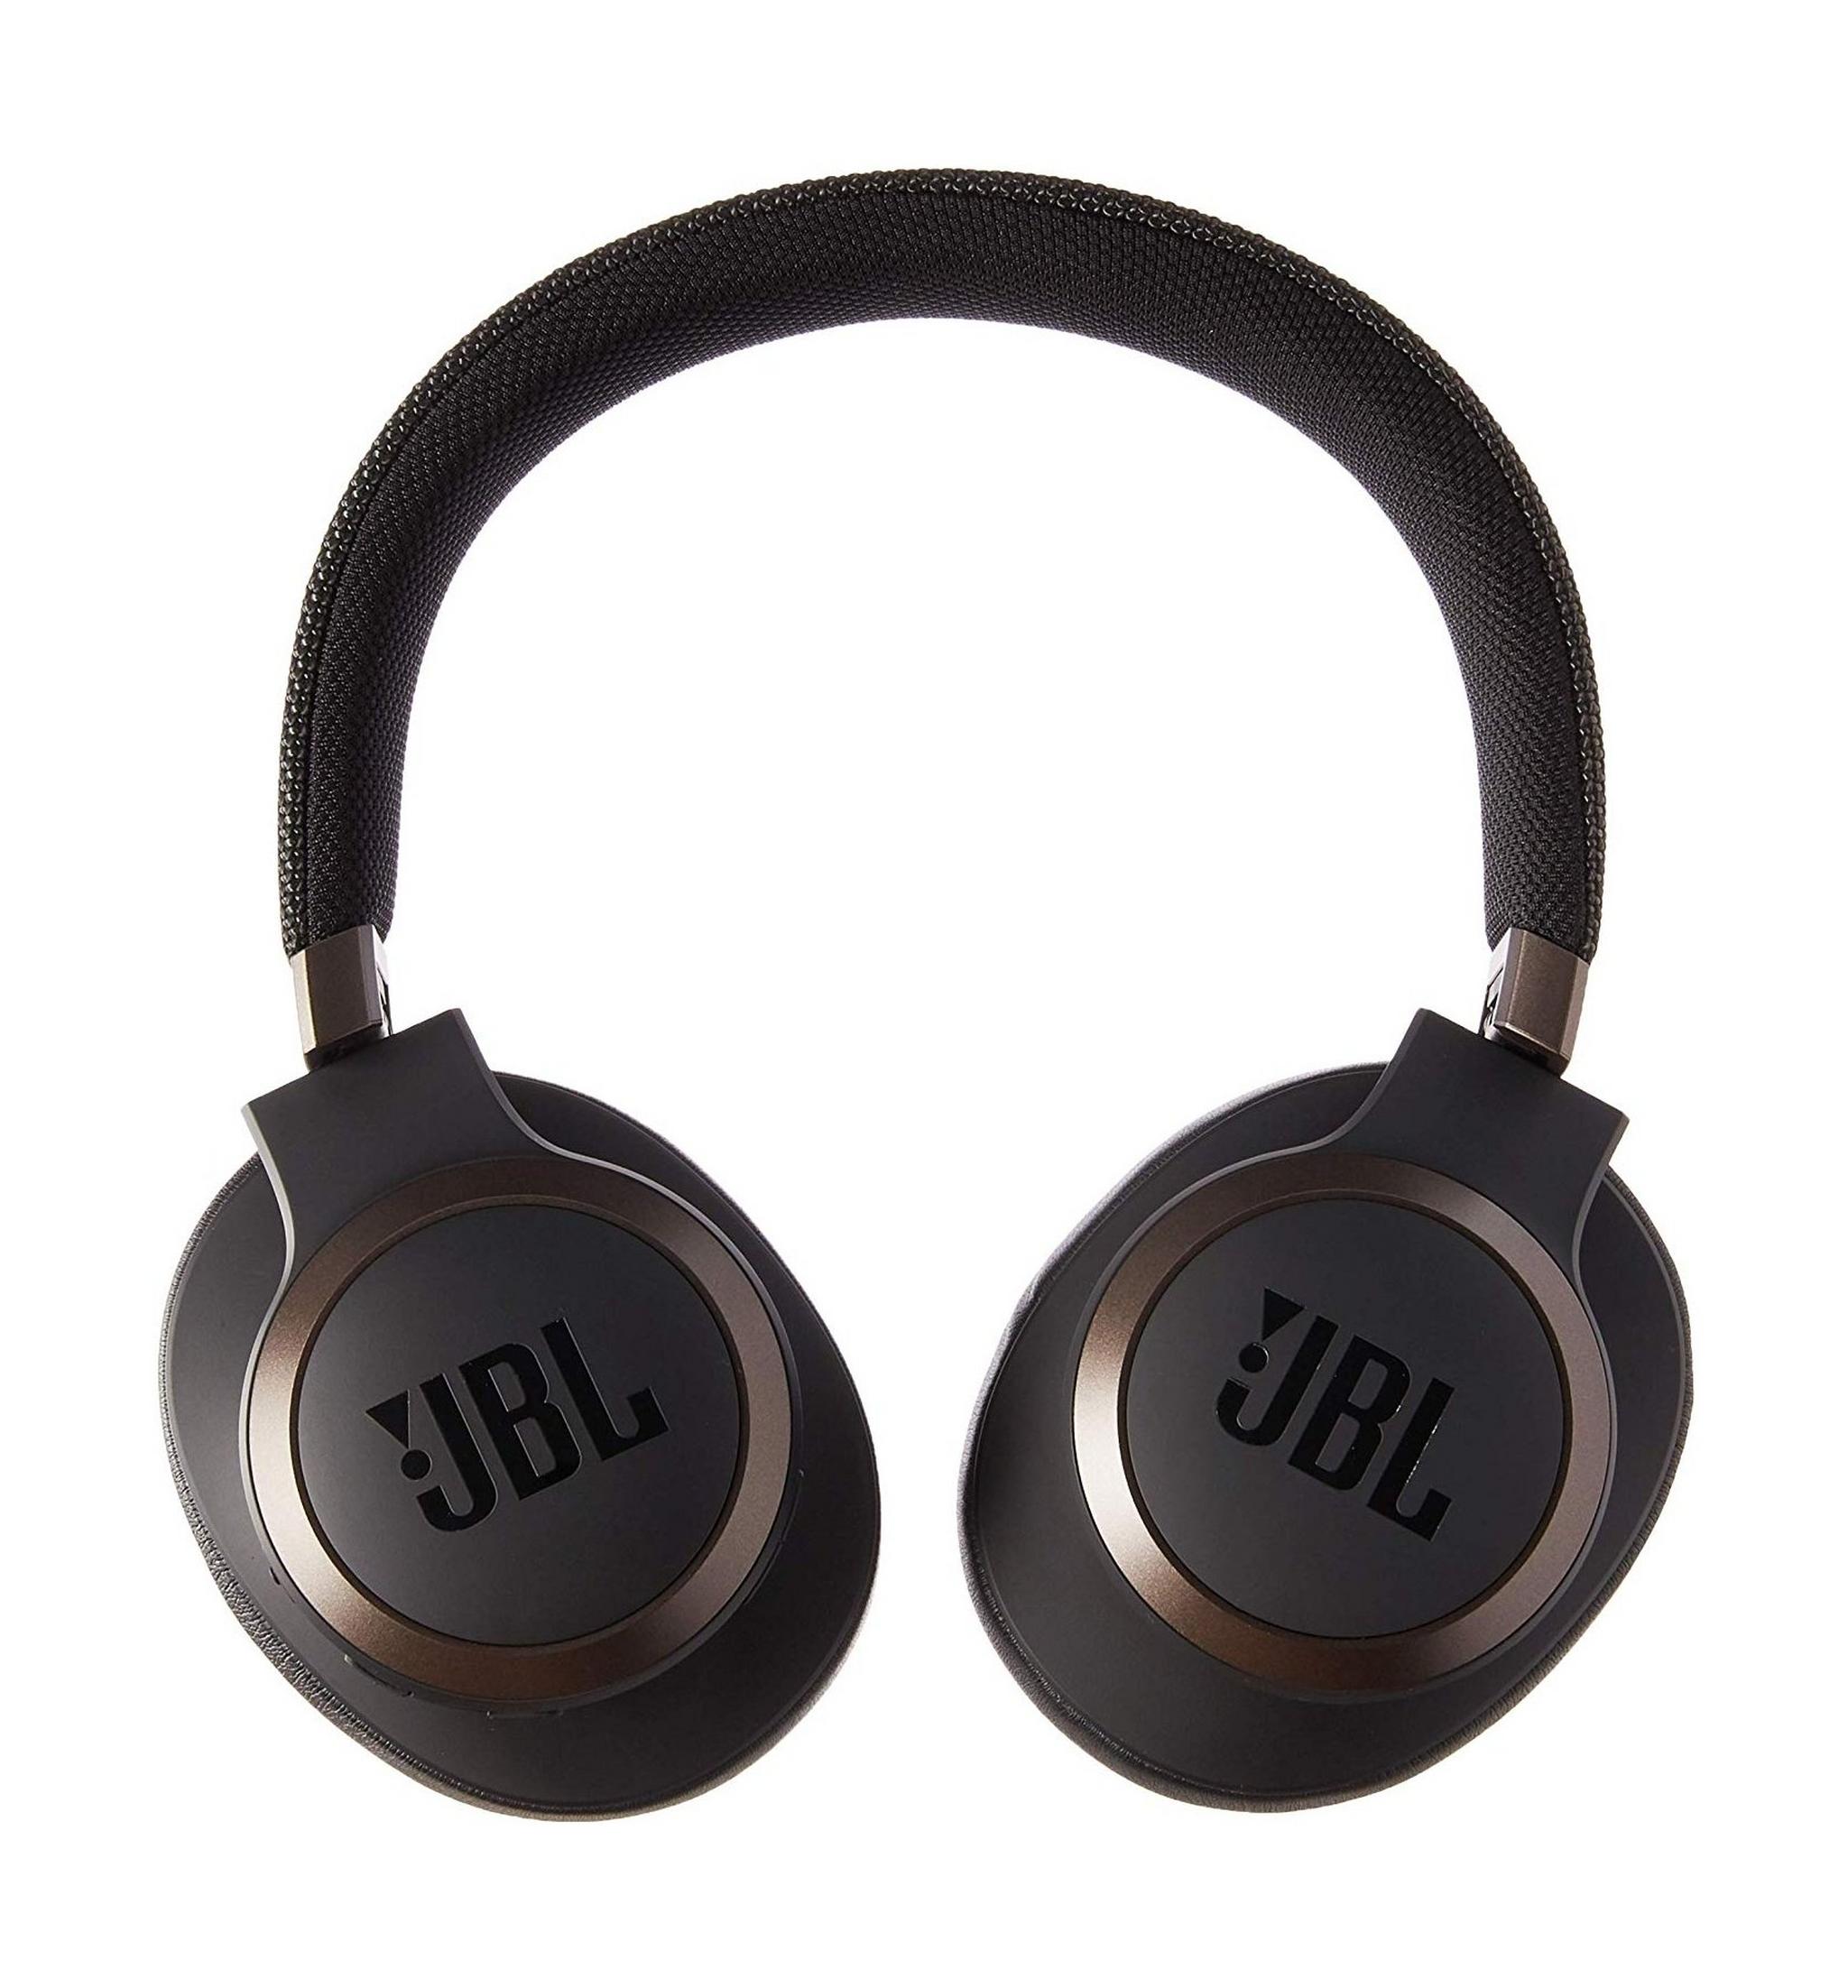 سماعة الرأس جاي بي إل لايف فوق الأذن اللاسلكية مع خاصية إلغاء الضوضاء (650BTNC) - أسود